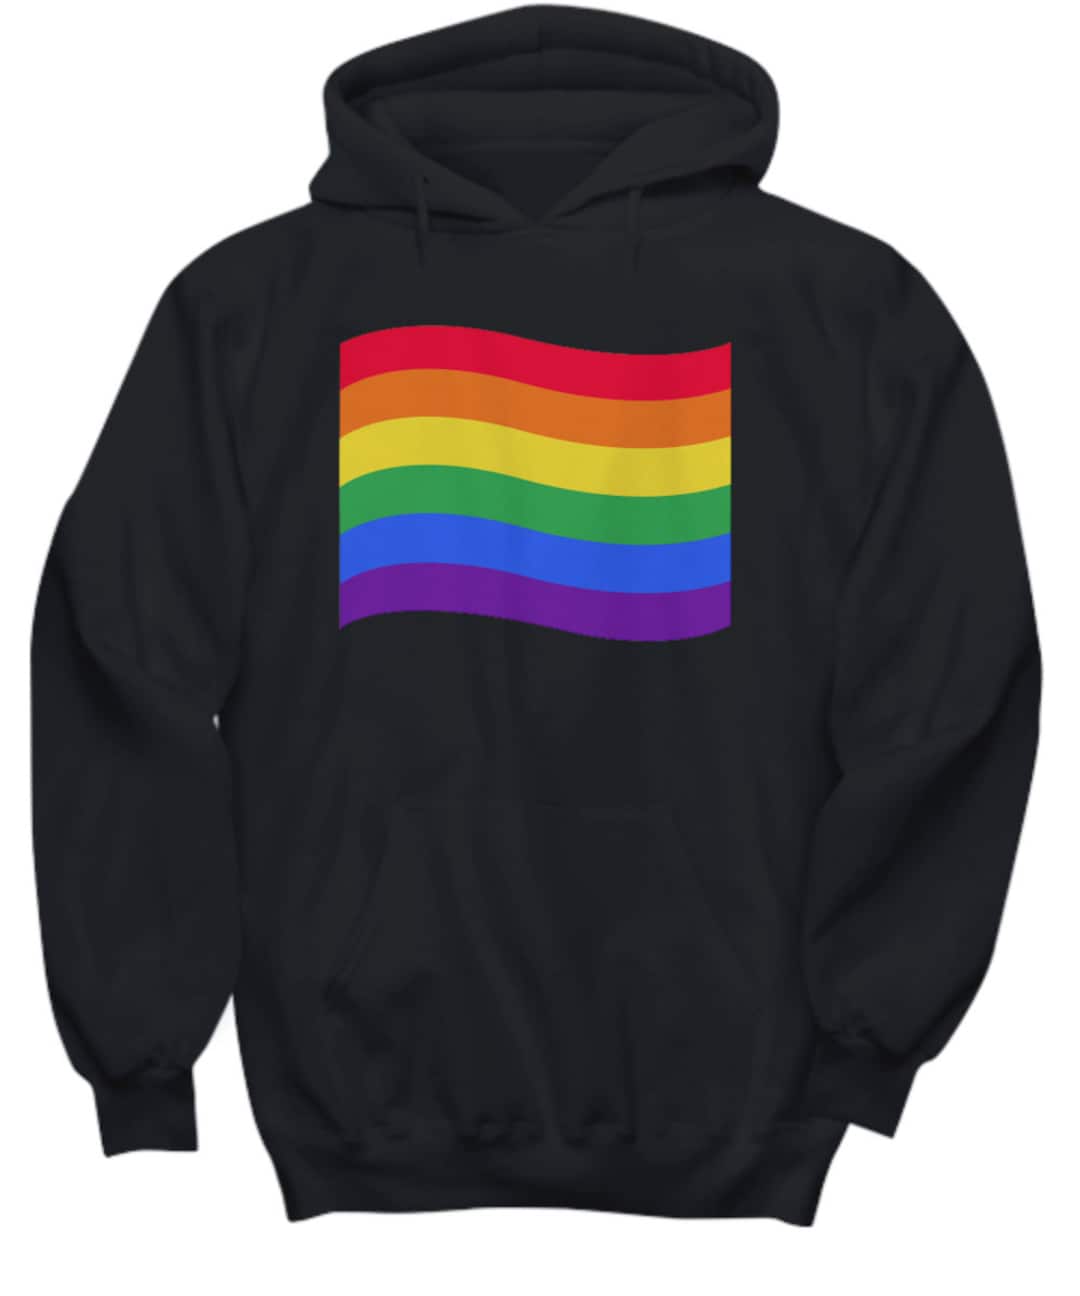 LGBTQ Hoodie, Pride Hoodie, Rainbow Hoodie, Lesbian Hoodie, Transgender ...